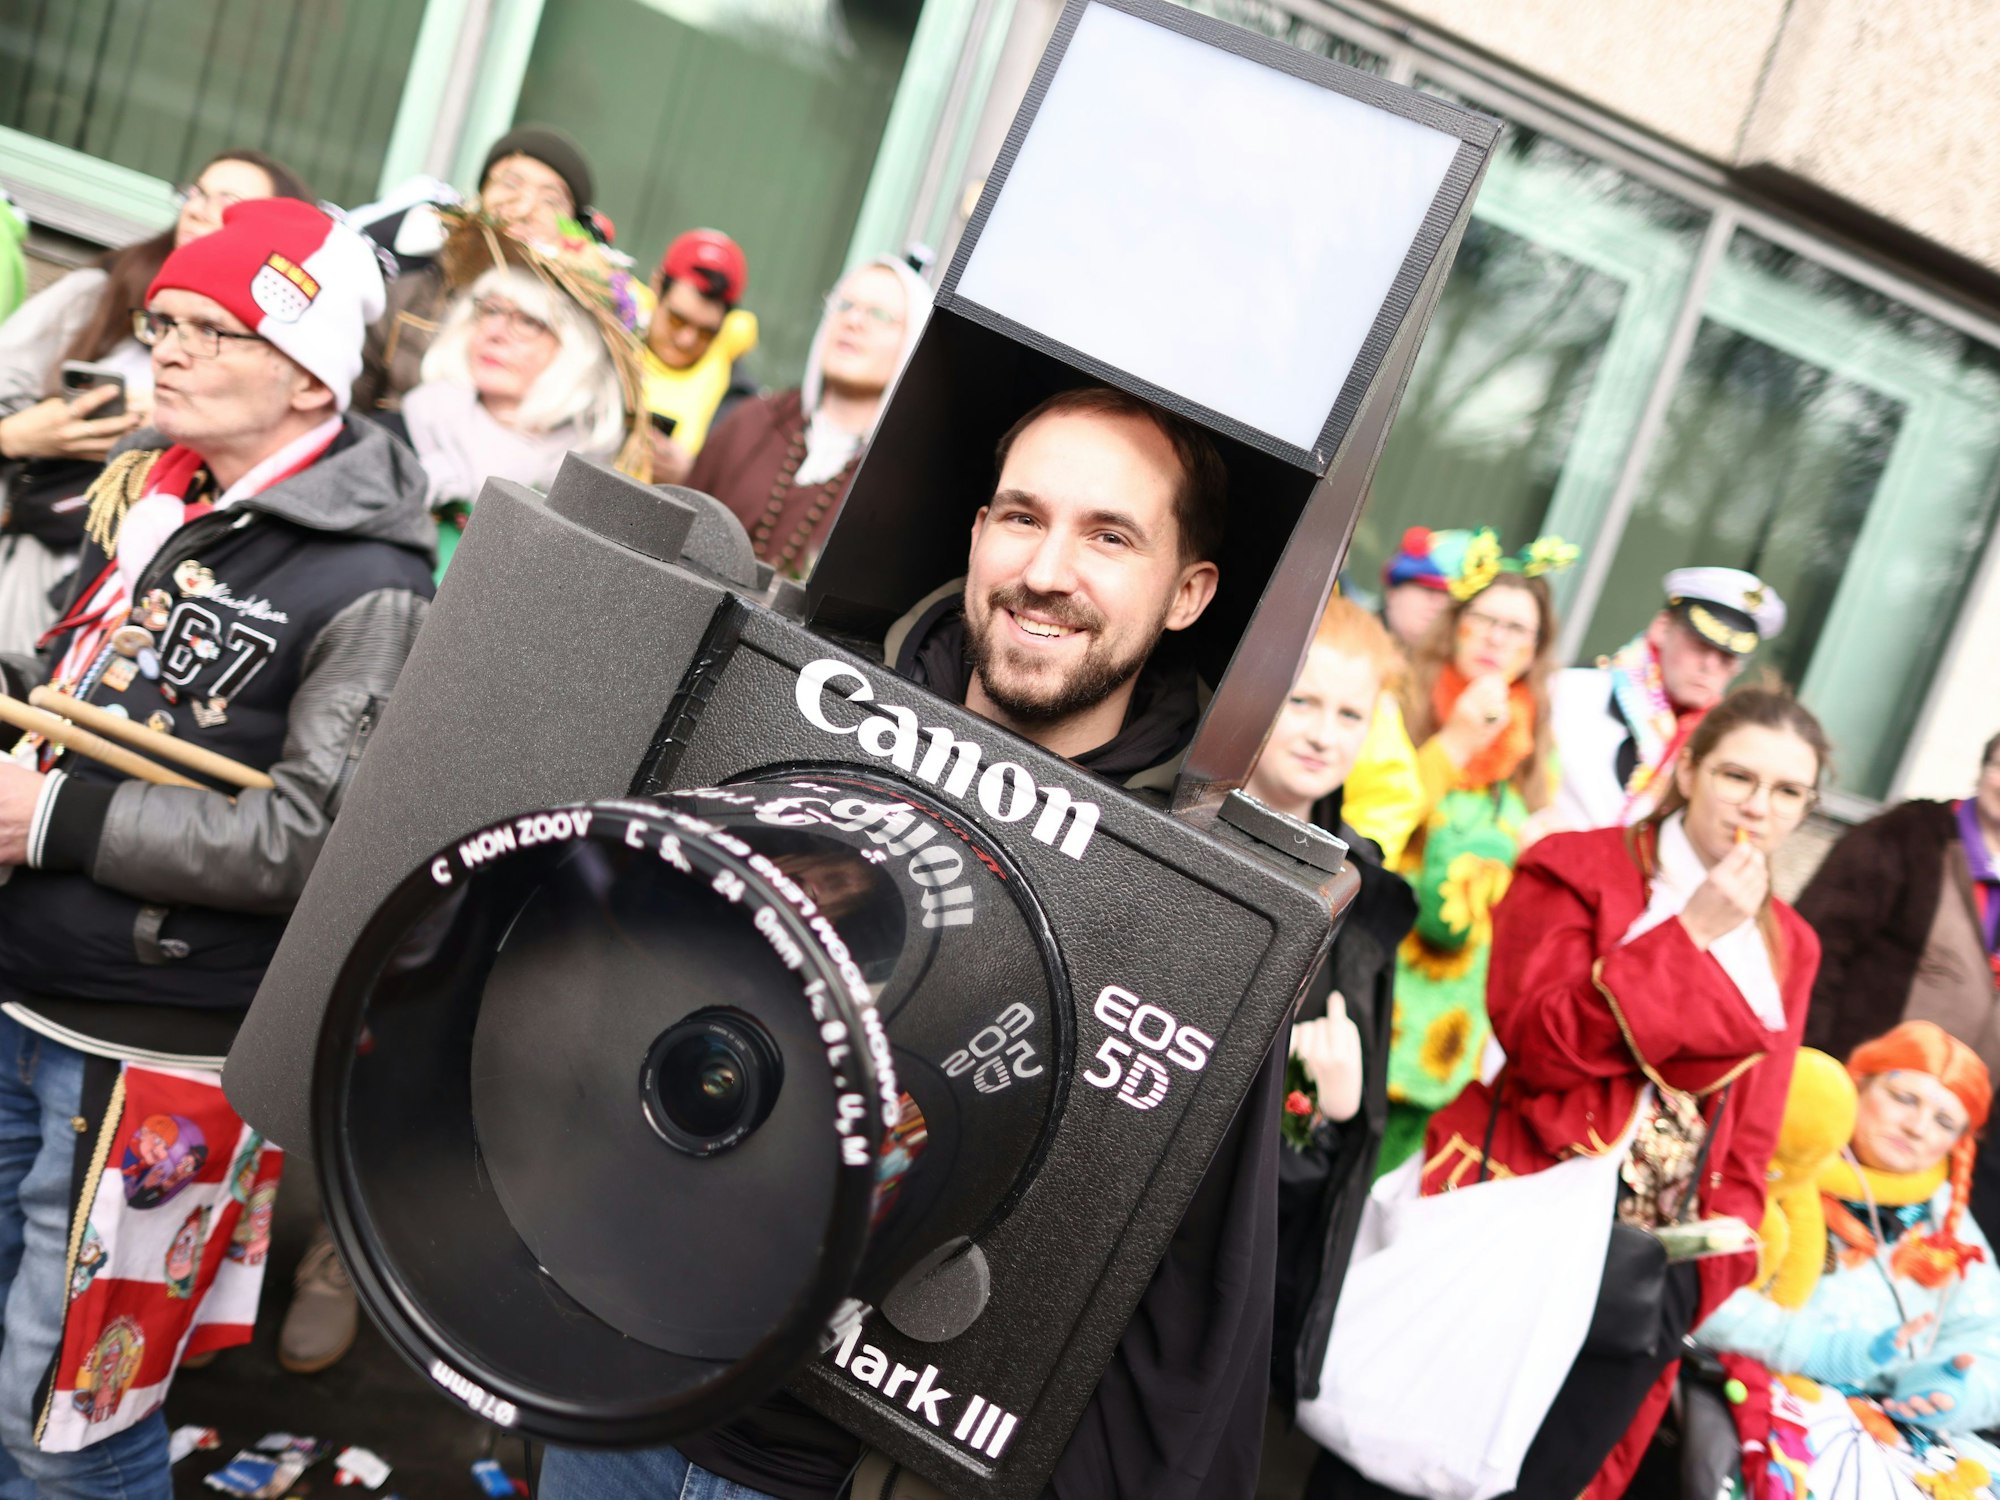 Ein Karnevalist ist als Fotokamera verkleidet.